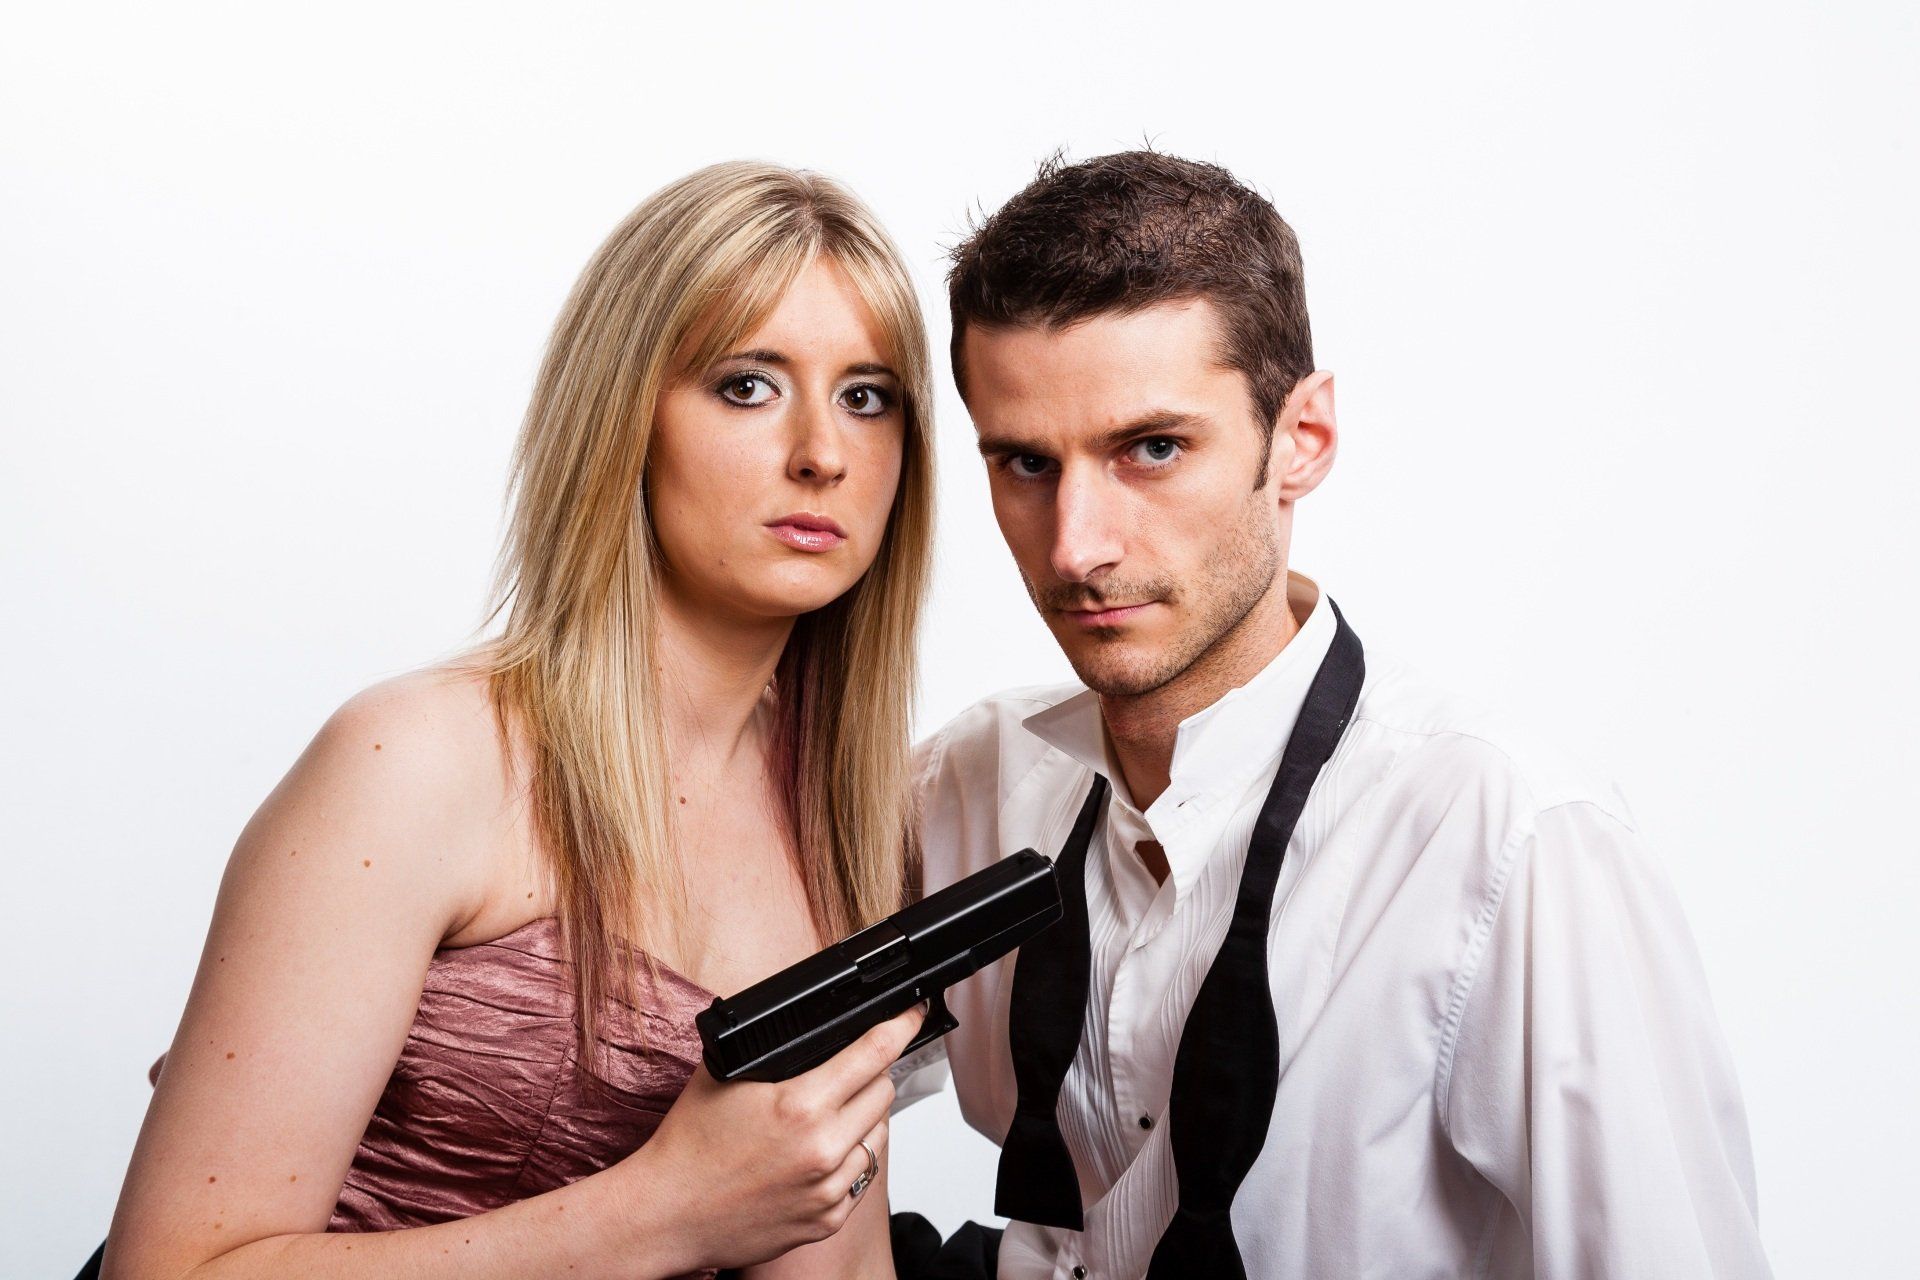 Couple with a handgun